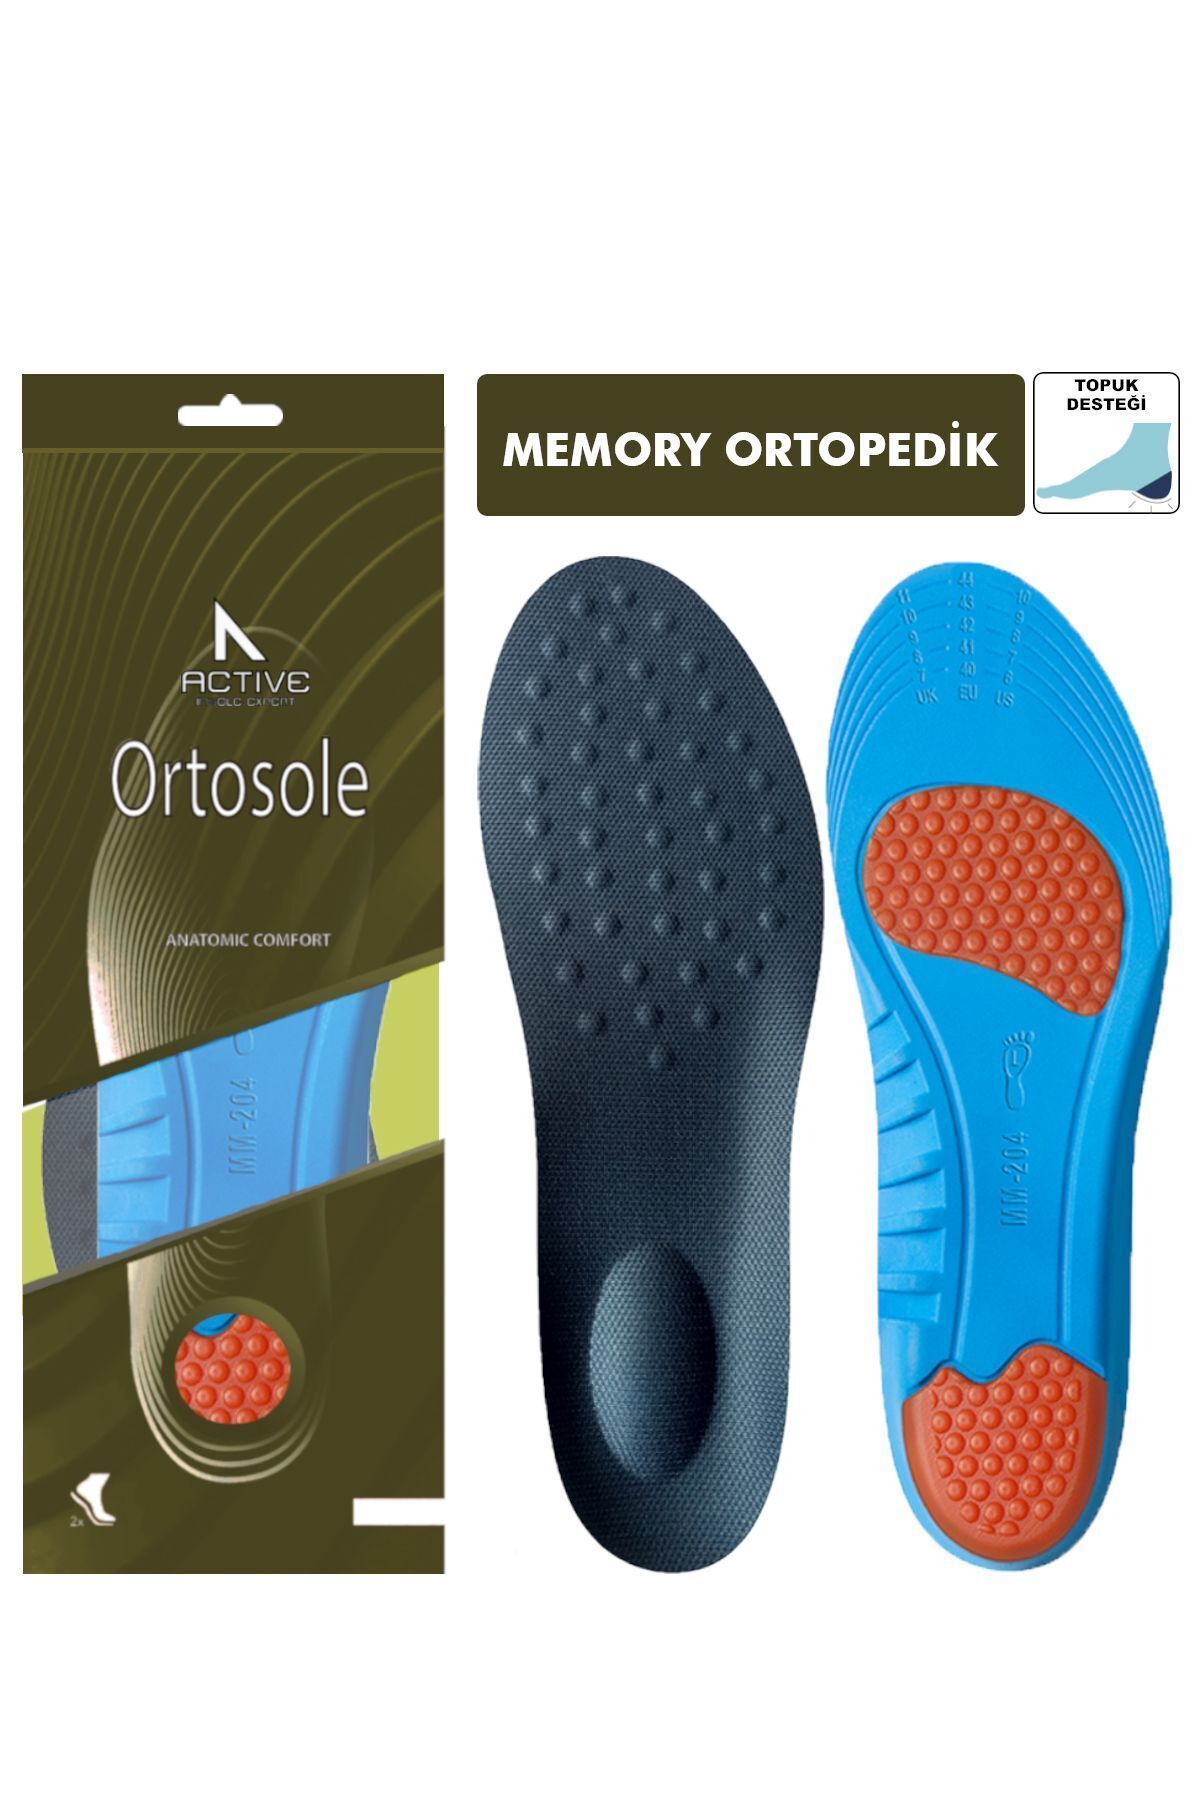 Ortosole Ortopedik Memory Foam Ayakkabı Tabanlığı, Masaj Etkili, Kemer Destekli Tabanlık